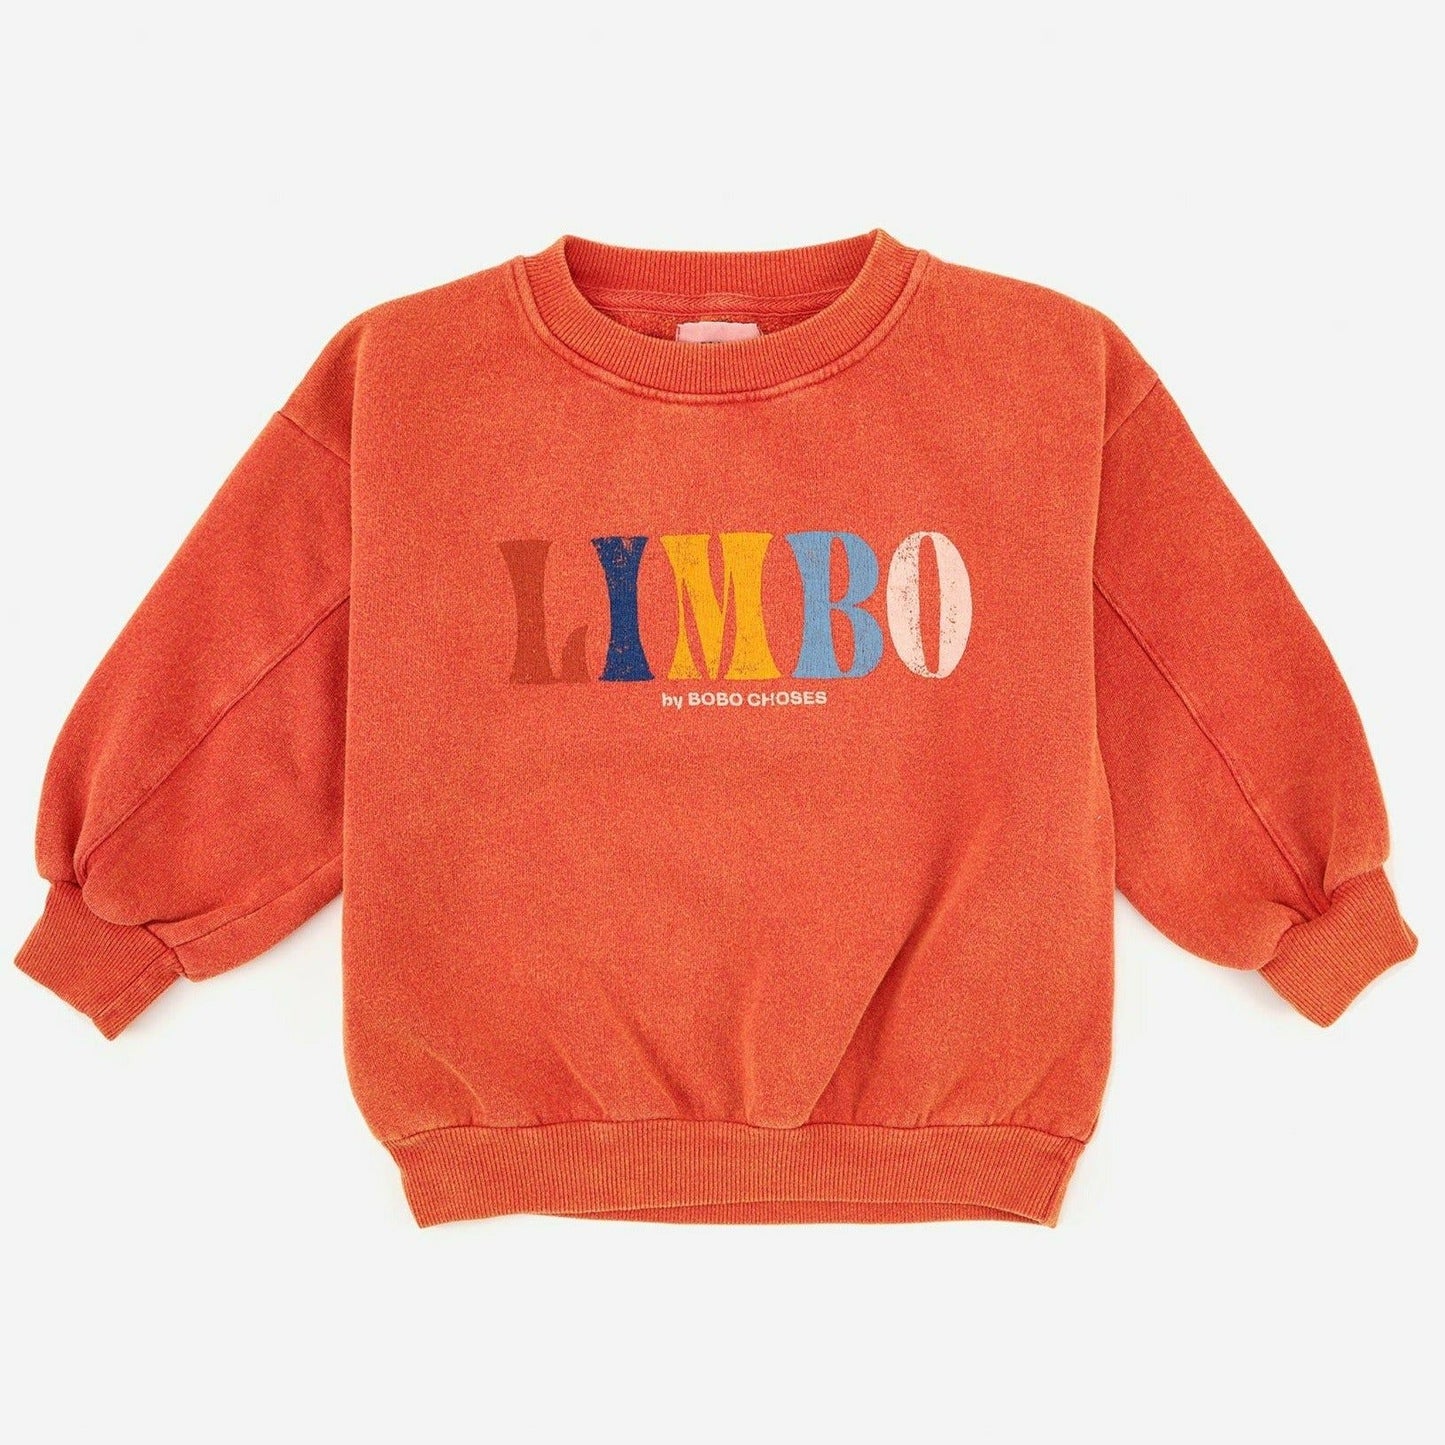 Limbo Sweatshirt